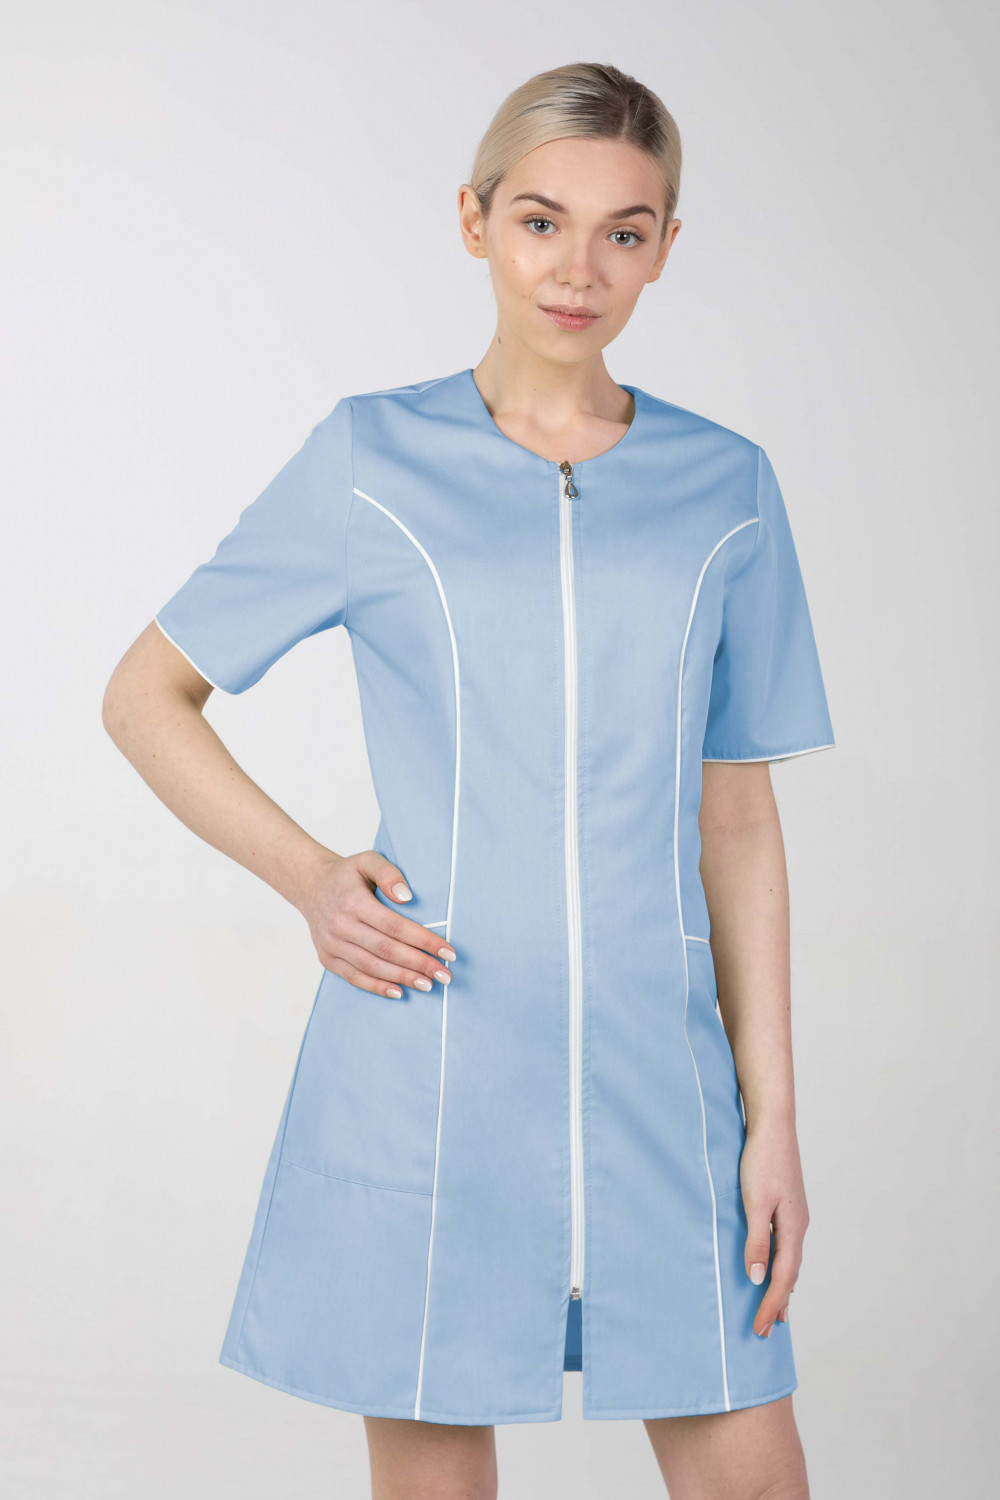 M-173C Fartuch damski medyczny sukienka medyczna na zamek kolor błękit